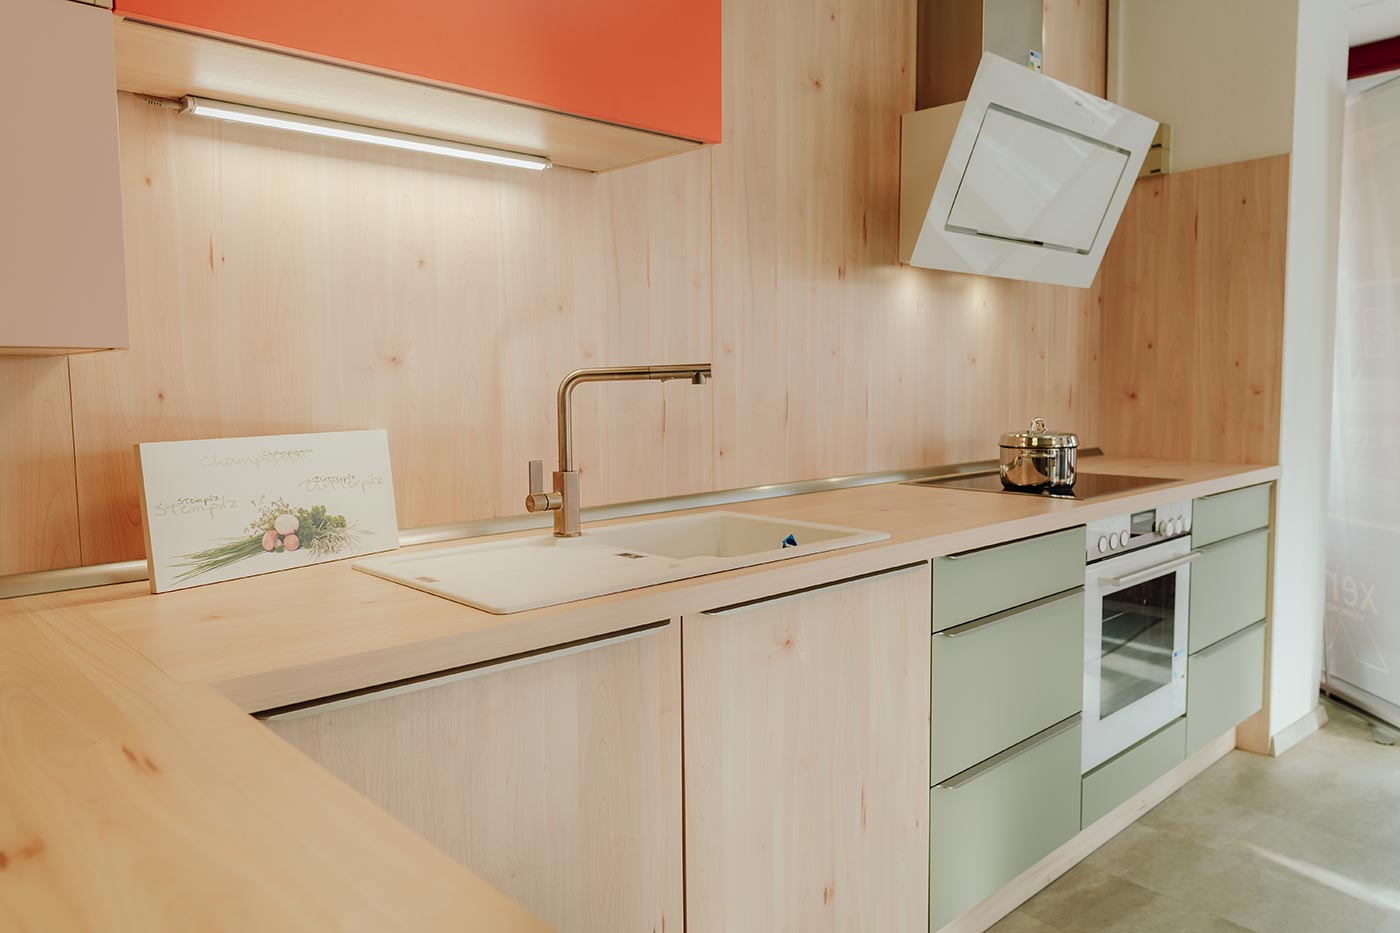 Küche aus Holz mit Fronten in orange & mintgrün in der Küchenausstellung Matthäs